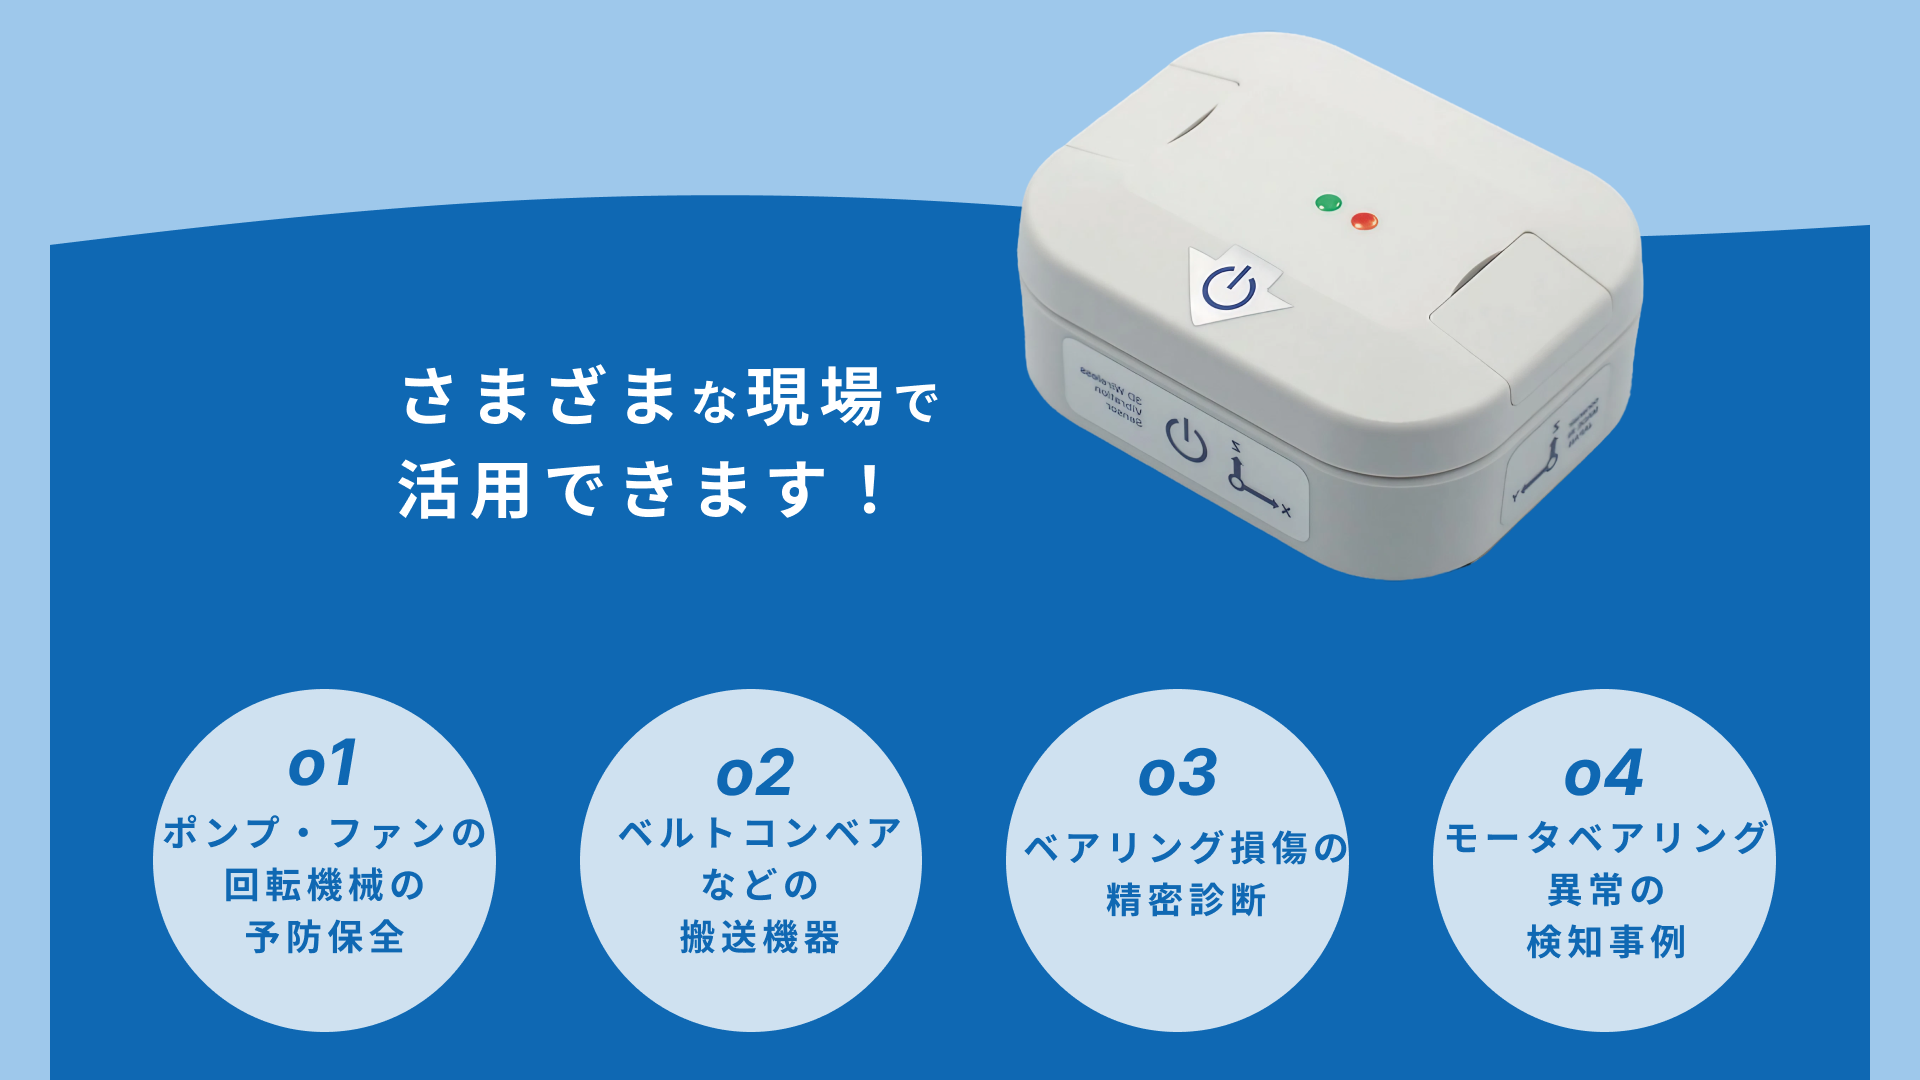 Wi-Fi 振動モニタリングシステム conanair